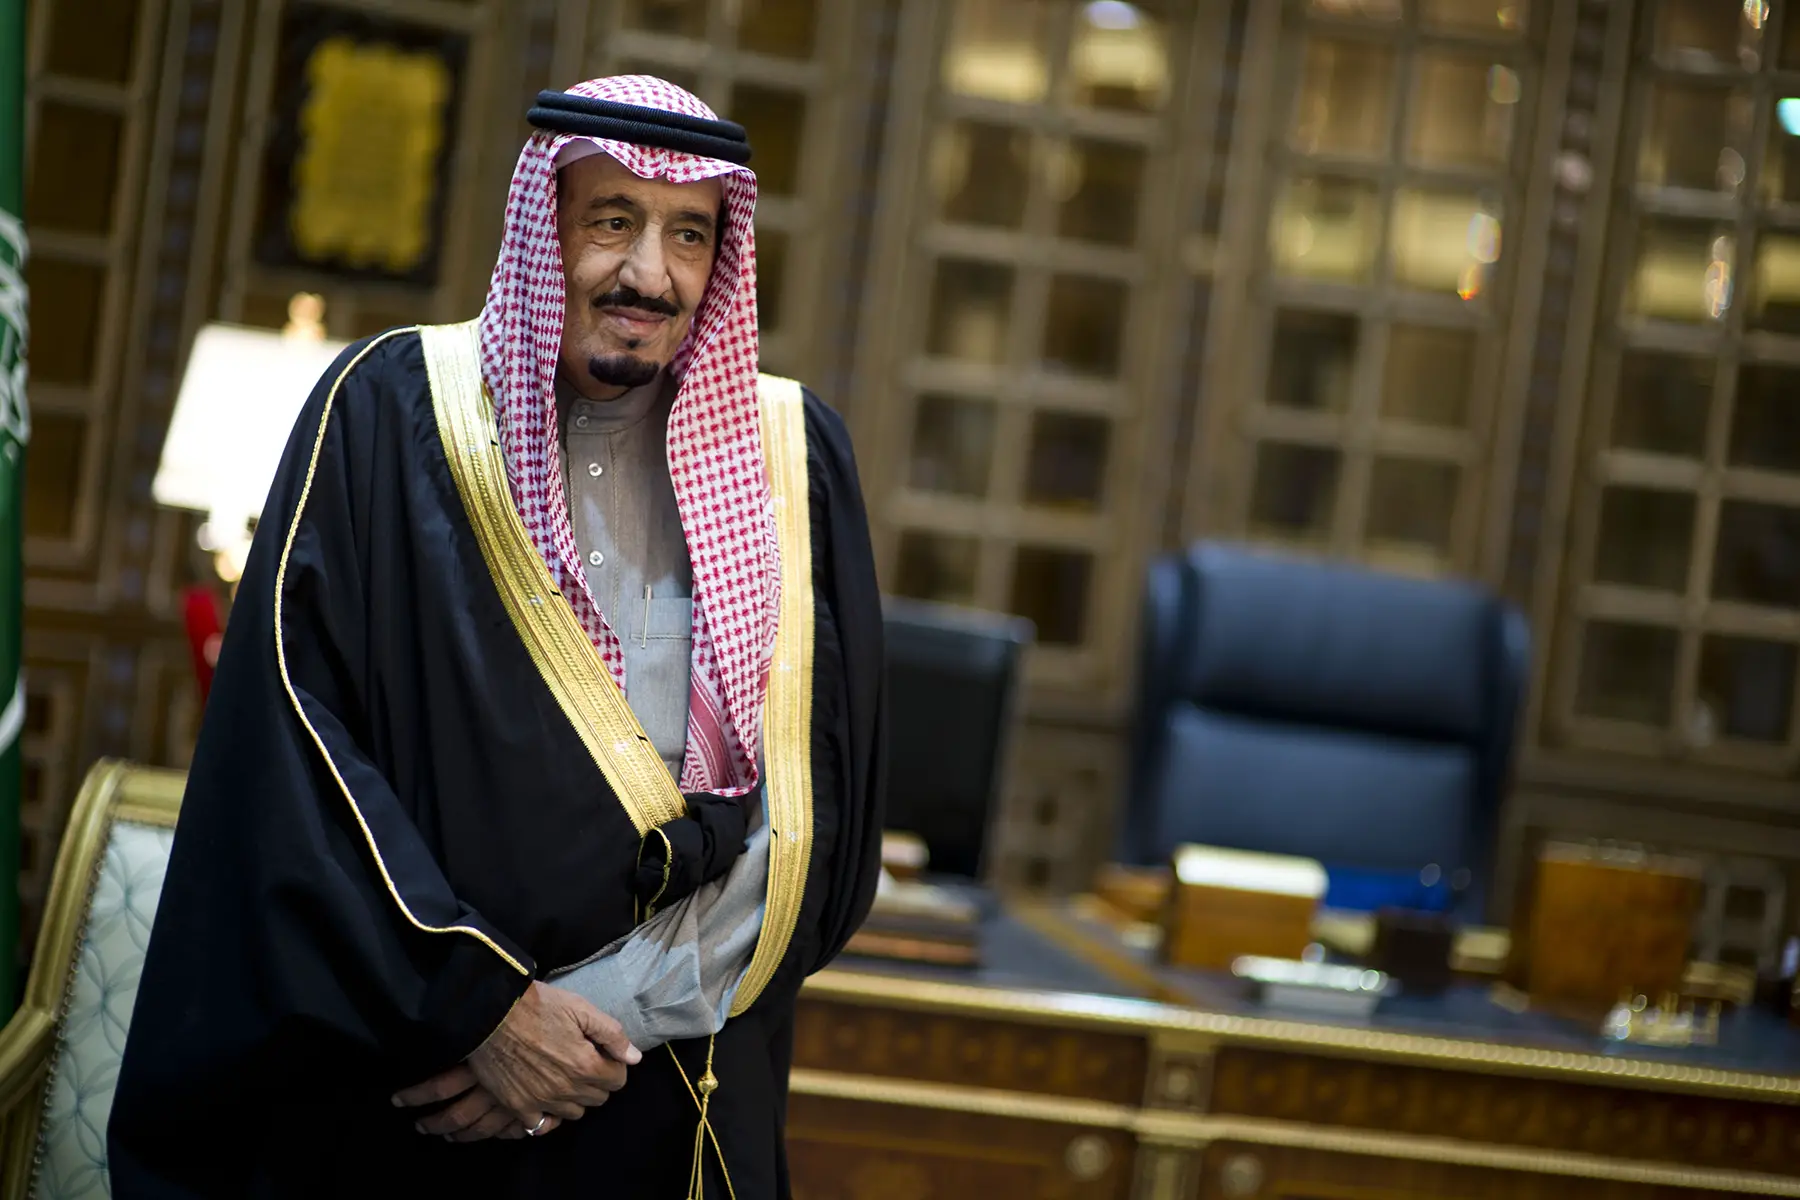 King Salman bin Abdulaziz al Saud